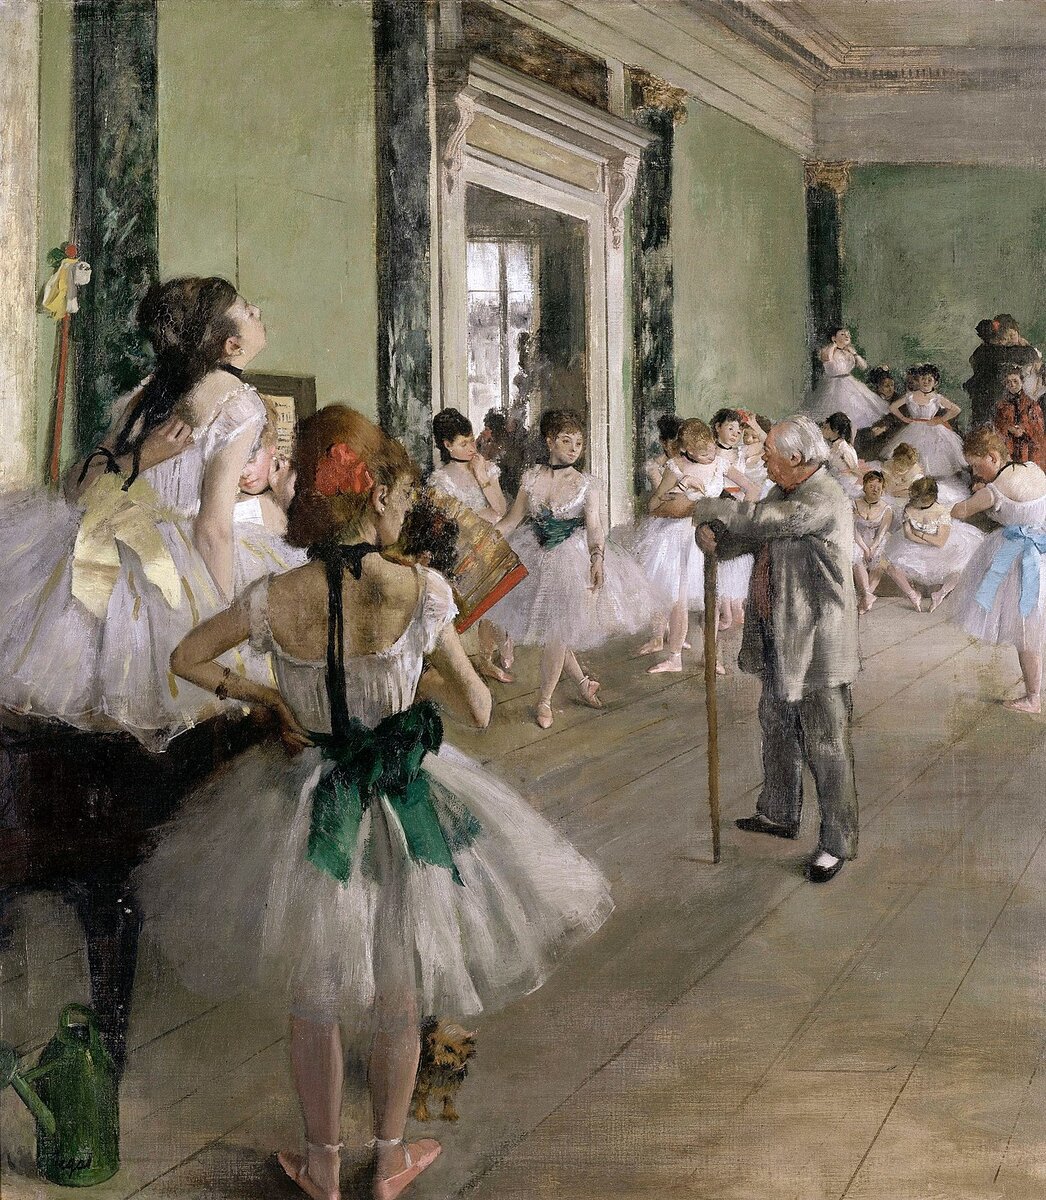 Эдгар Дега "Танцевальный класс", 1871-1874. Музей д’Орсе, Париж.